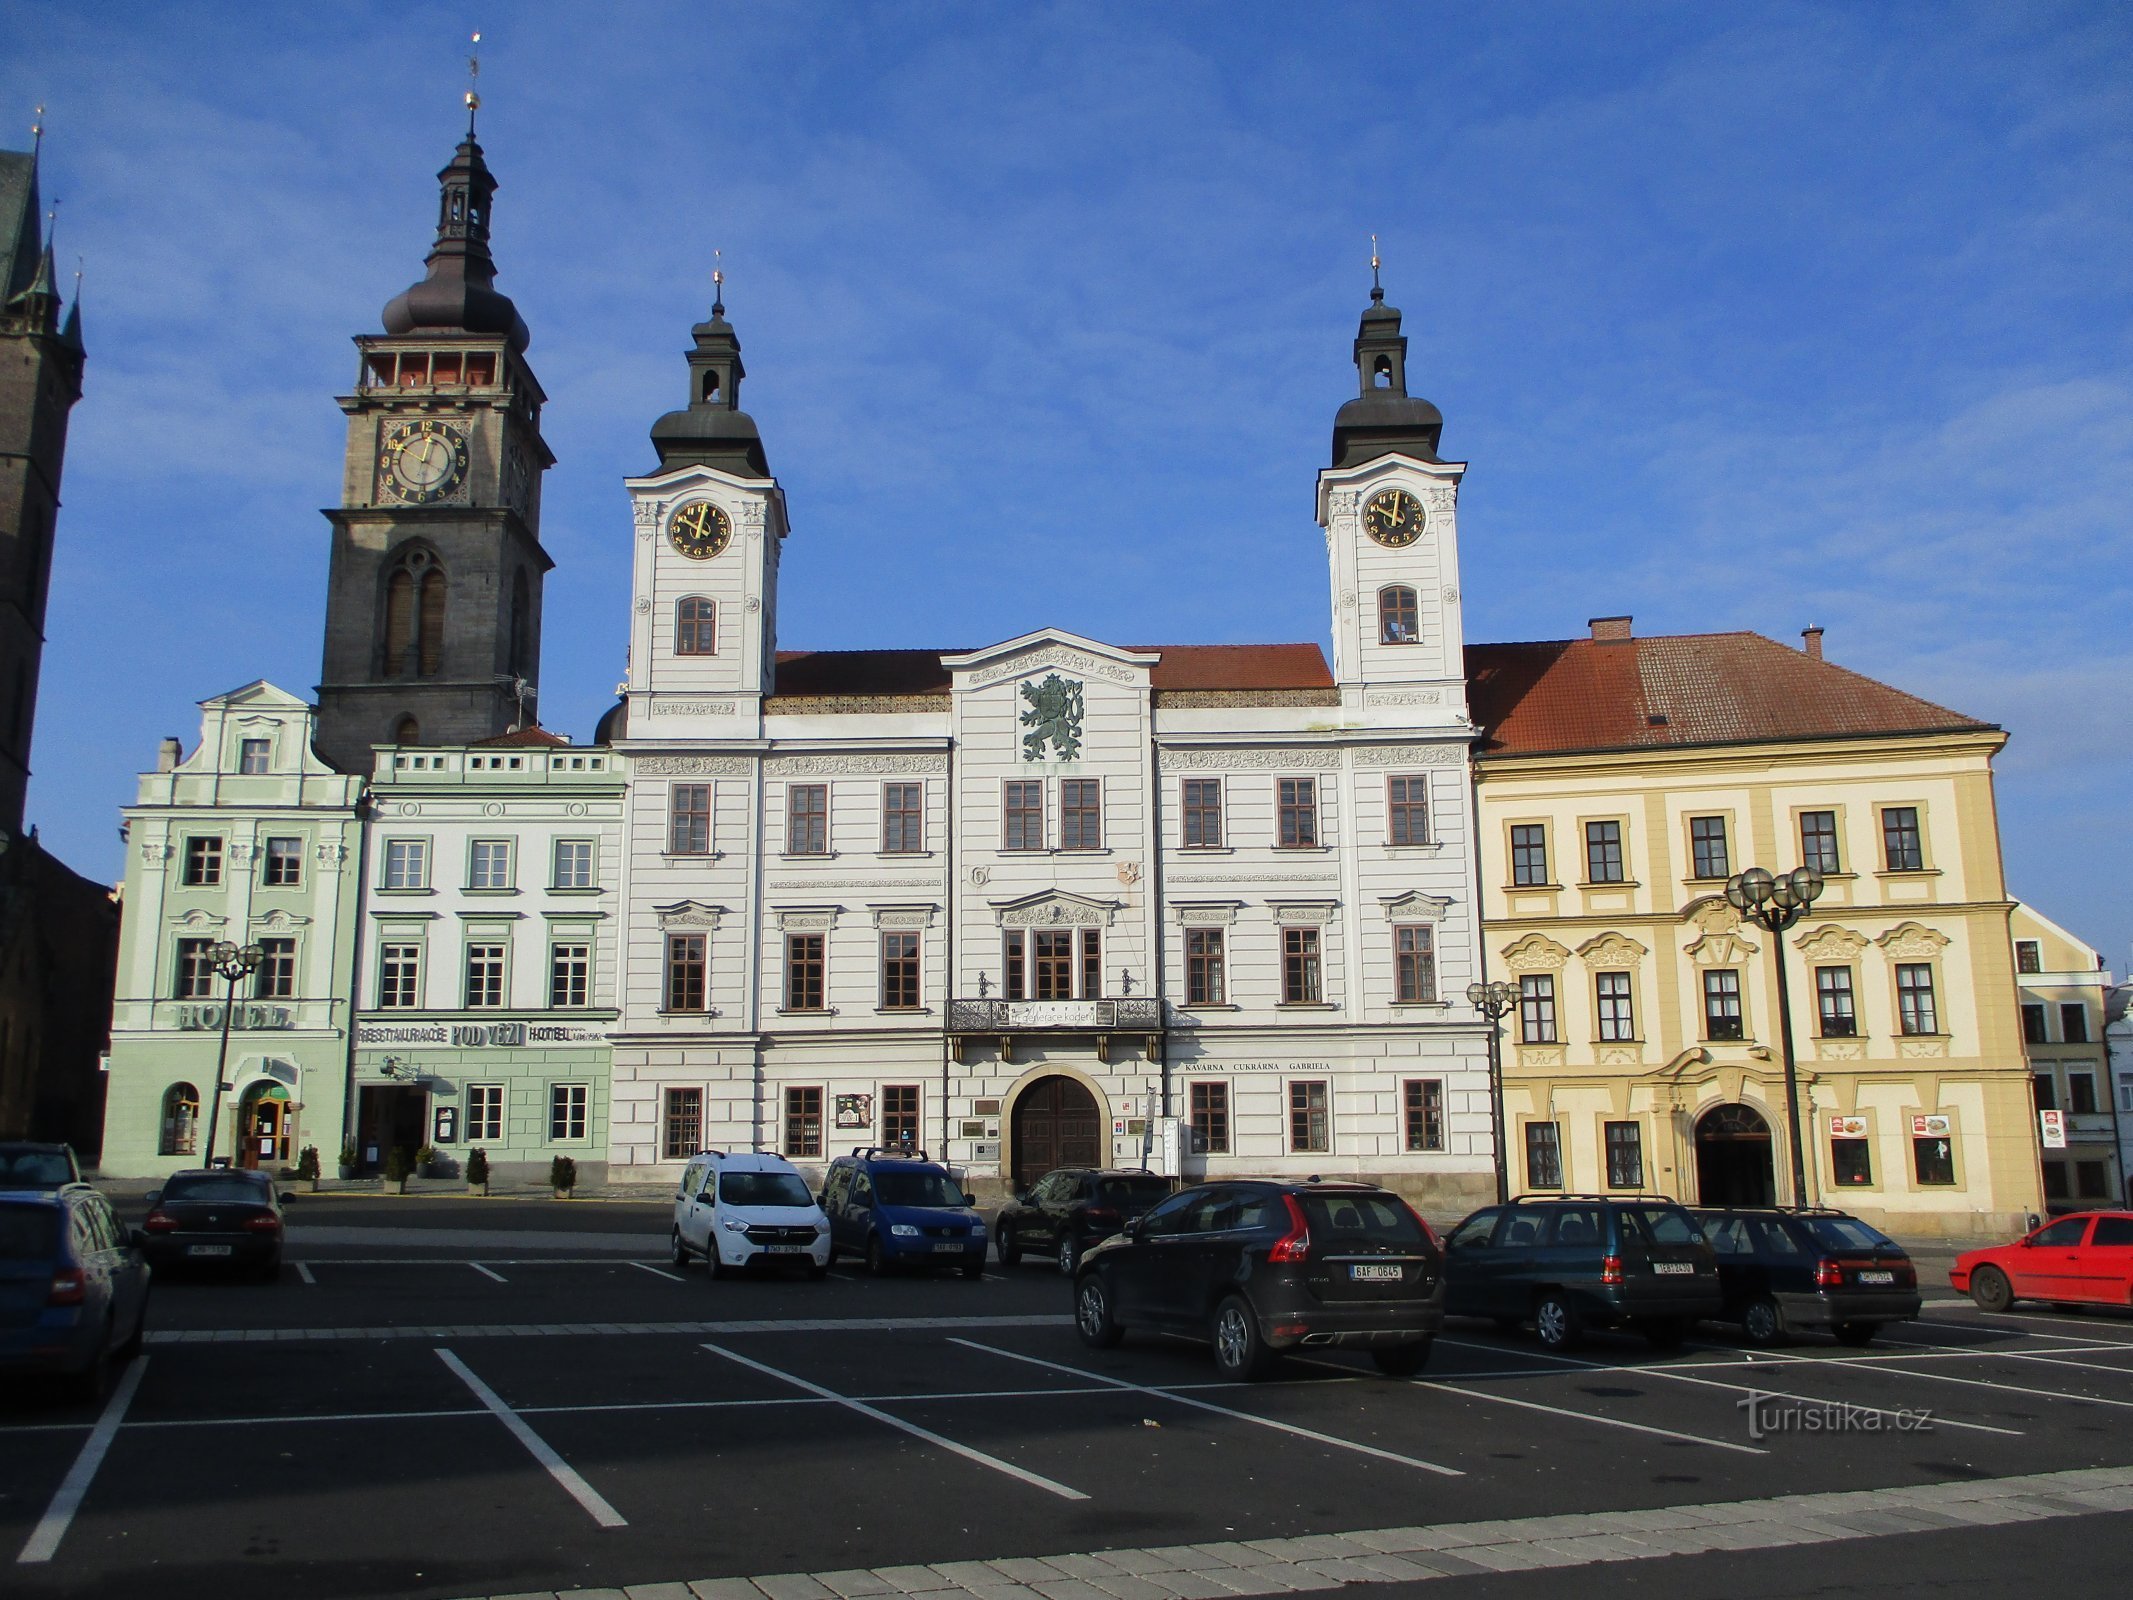 La rangée ouest de maisons à Velké náměstí (Hradec Králové, 9.2.2020 février XNUMX)